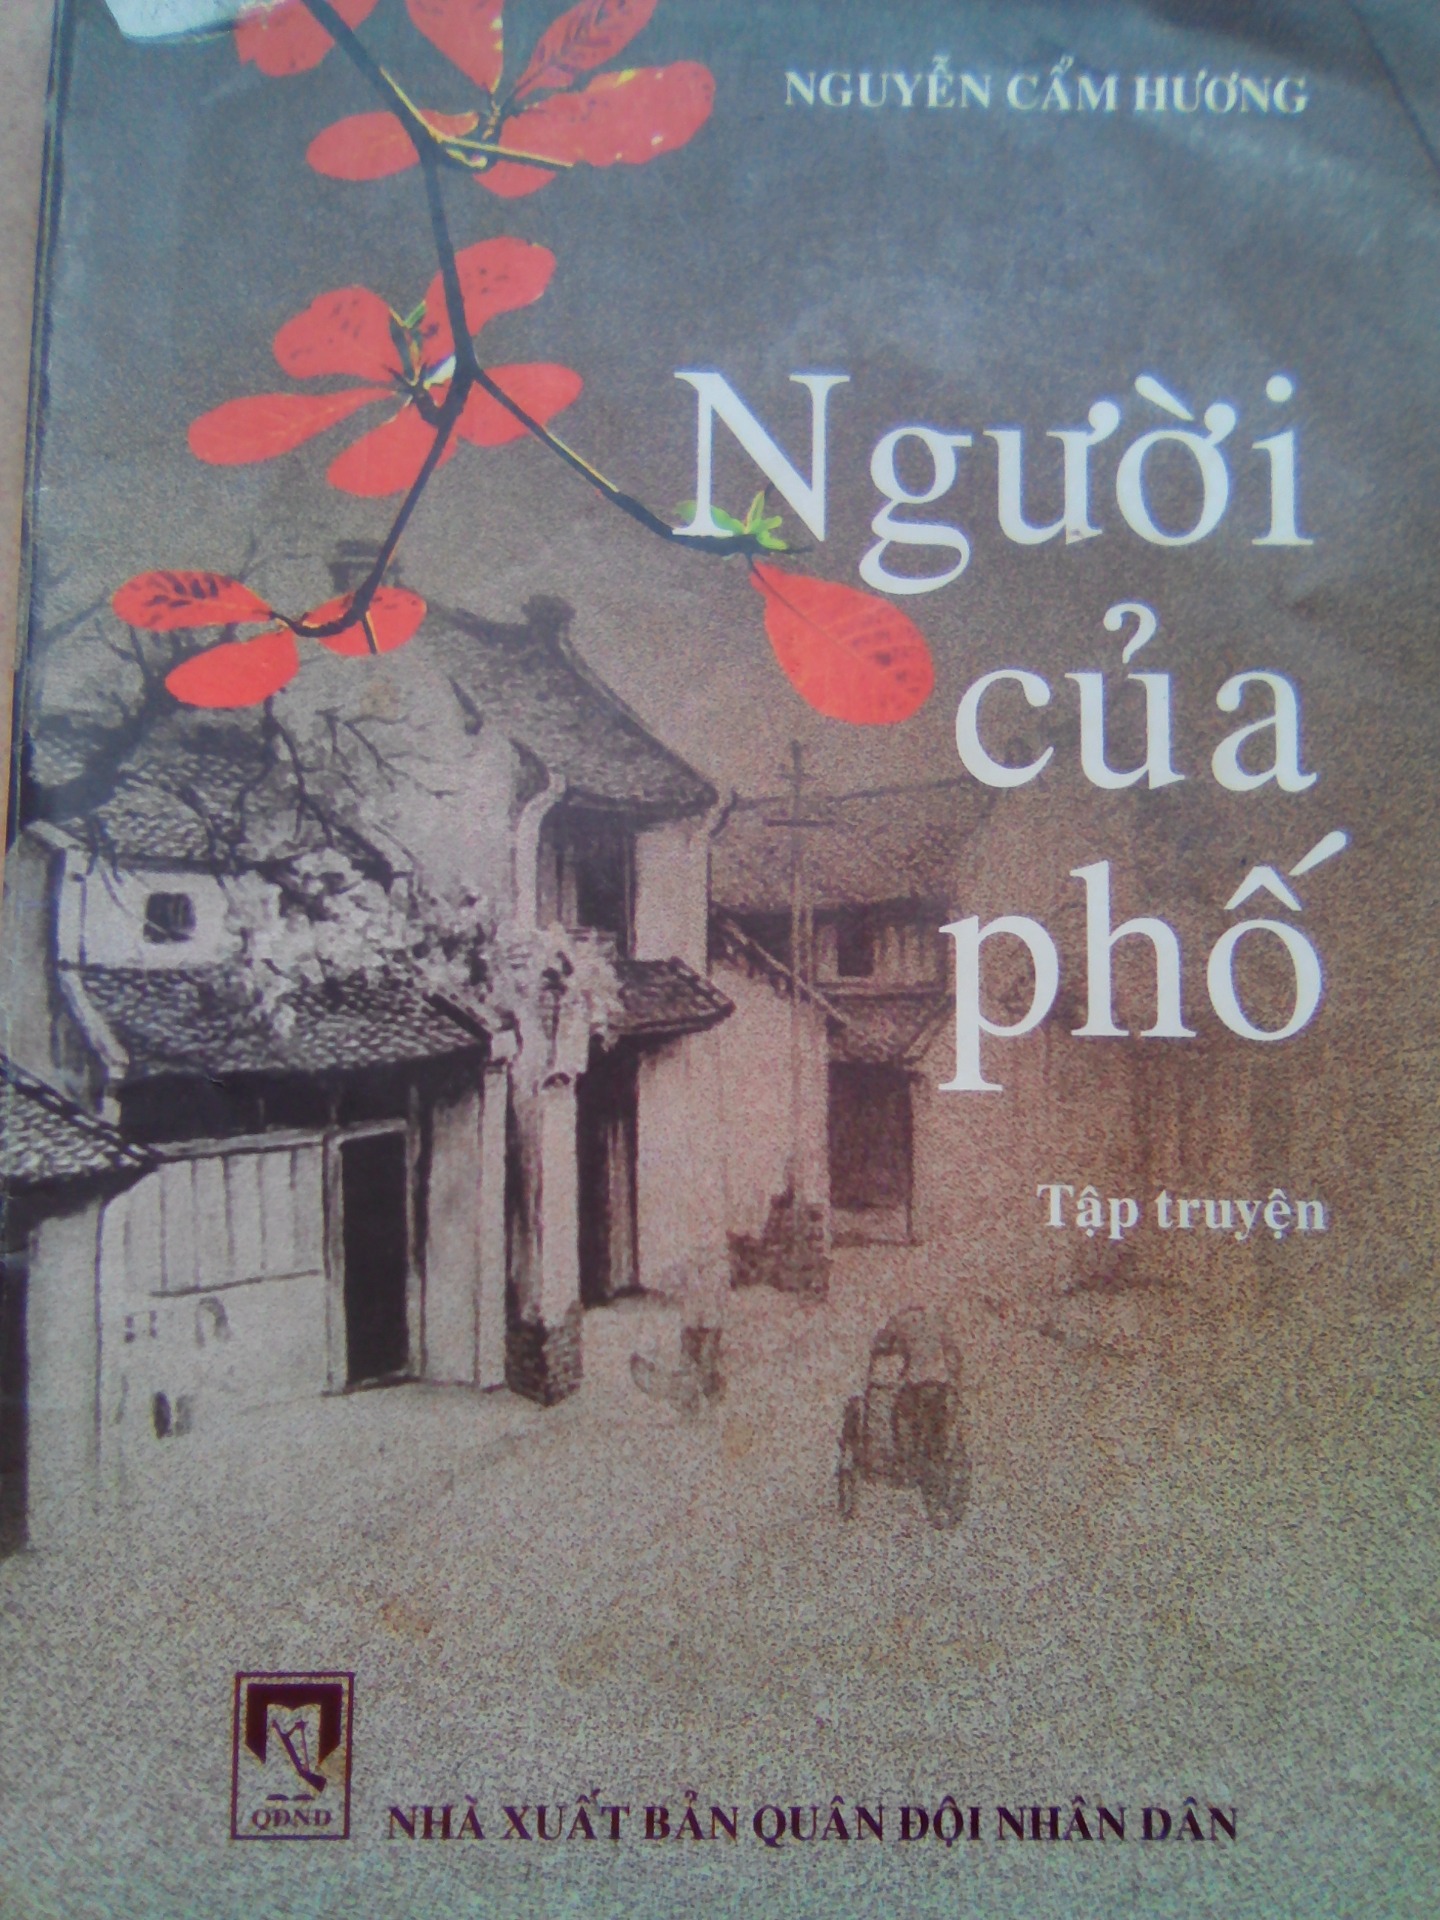 Người Của Phố - tập truyện ngắn hay của nhà văn Nguyễn Cẩm Hương